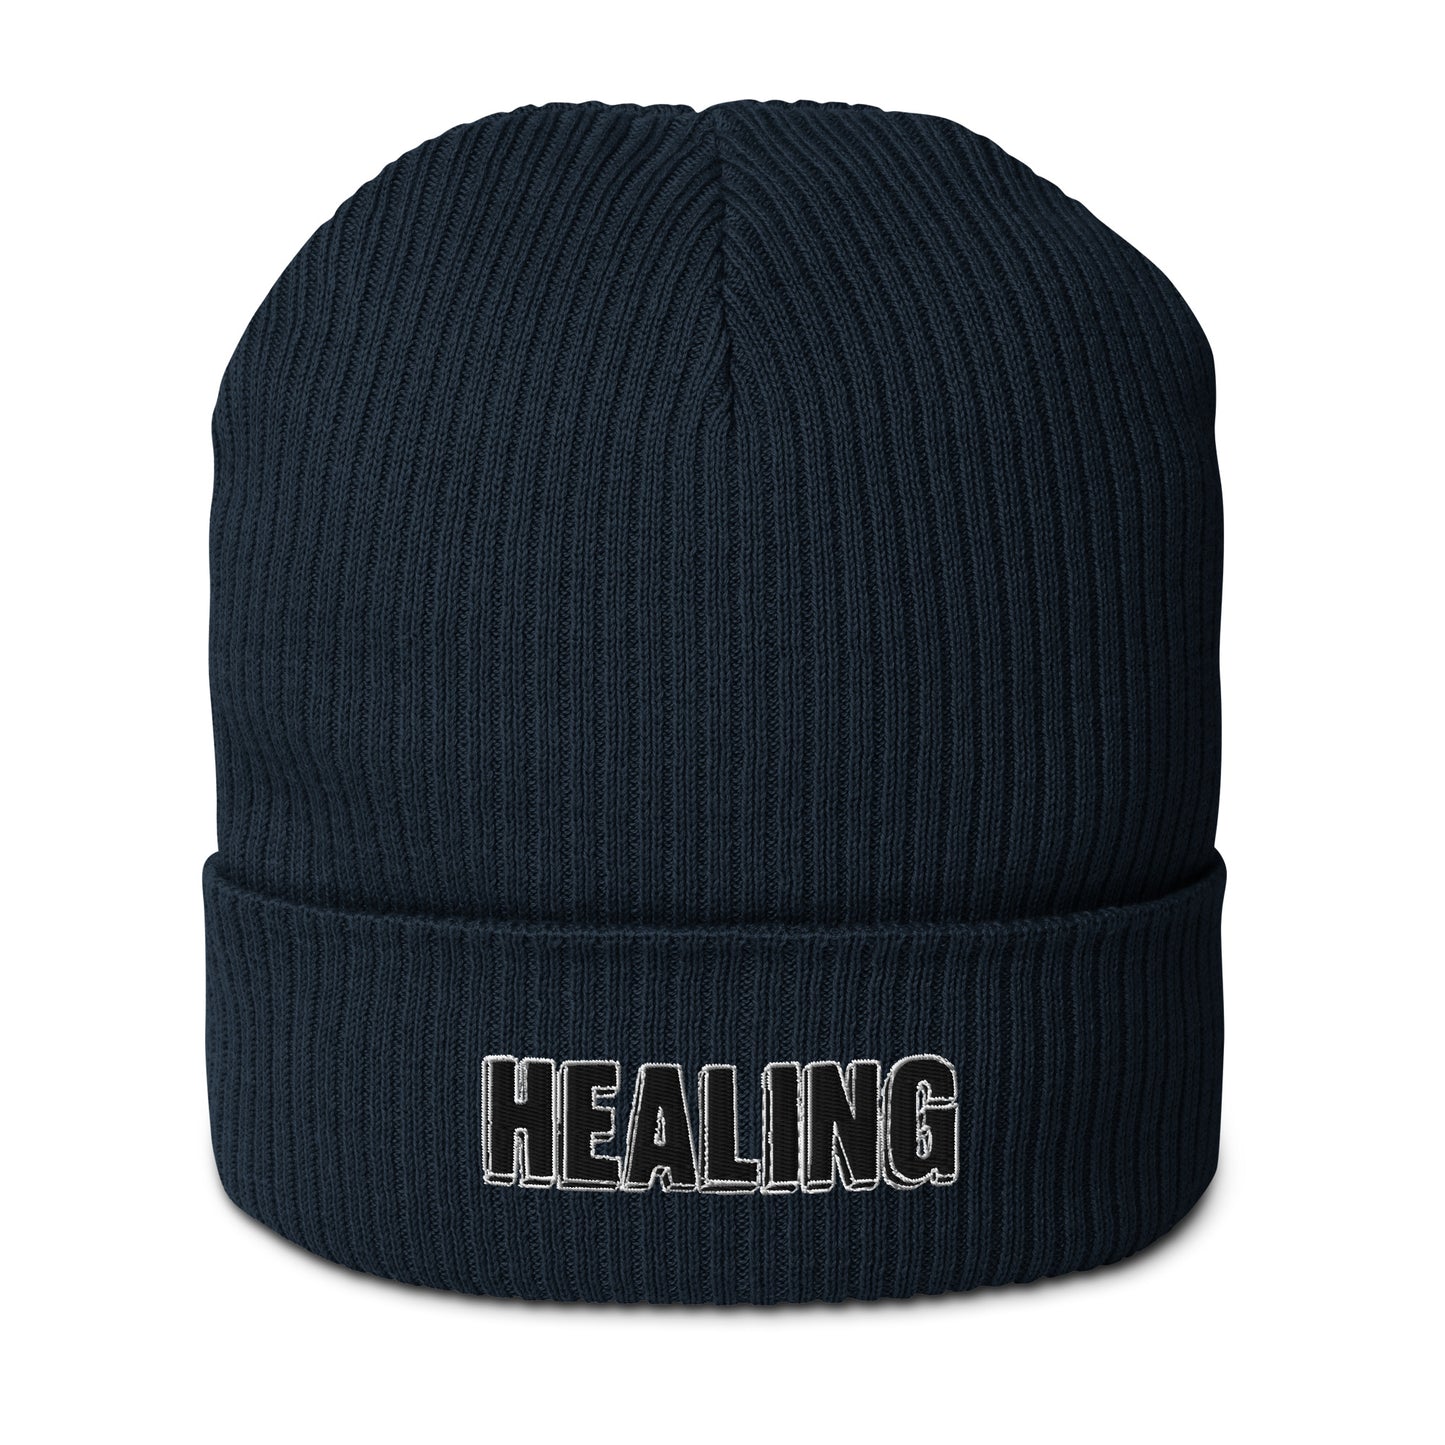 Healing - Beanie